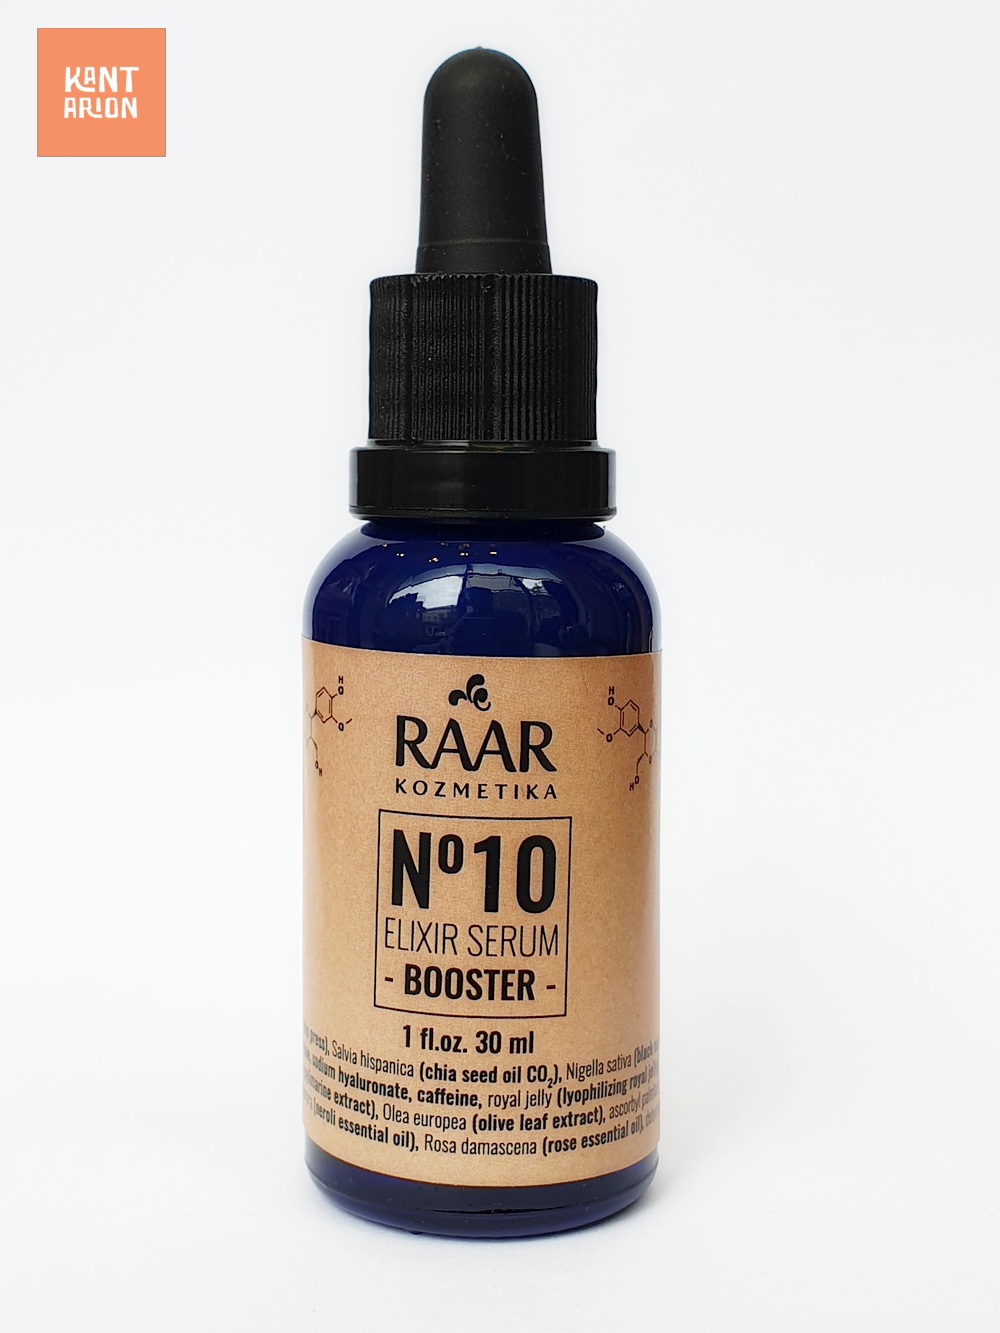 RAAR – N°10 Elixir serum – booster